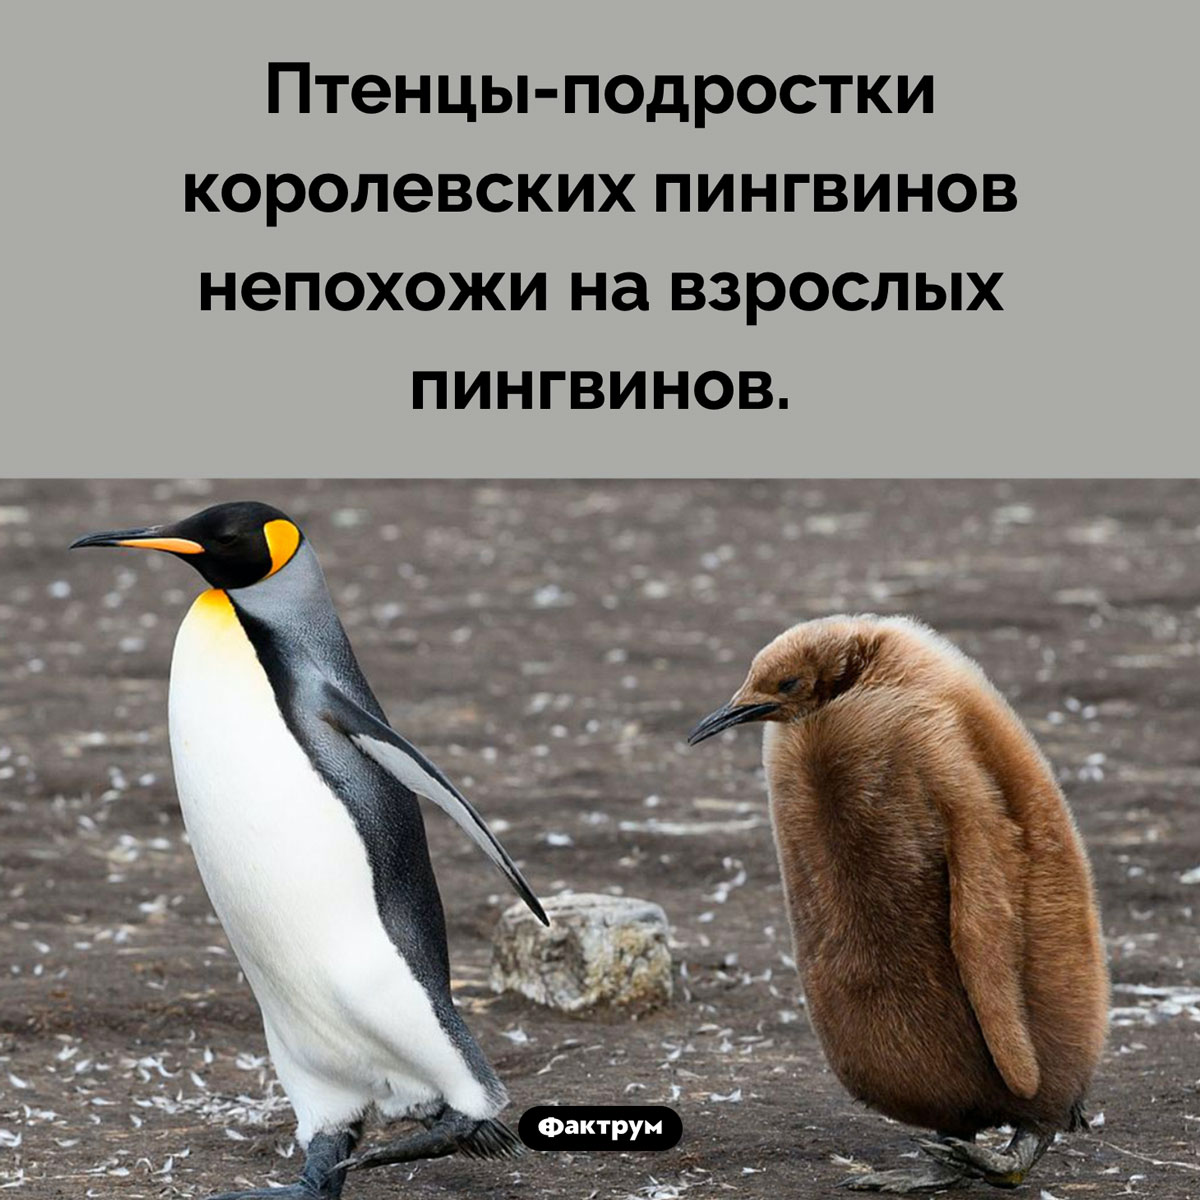 Странный коричневый пингвин. Птенцы-подростки королевских пингвинов непохожи на взрослых пингвинов.